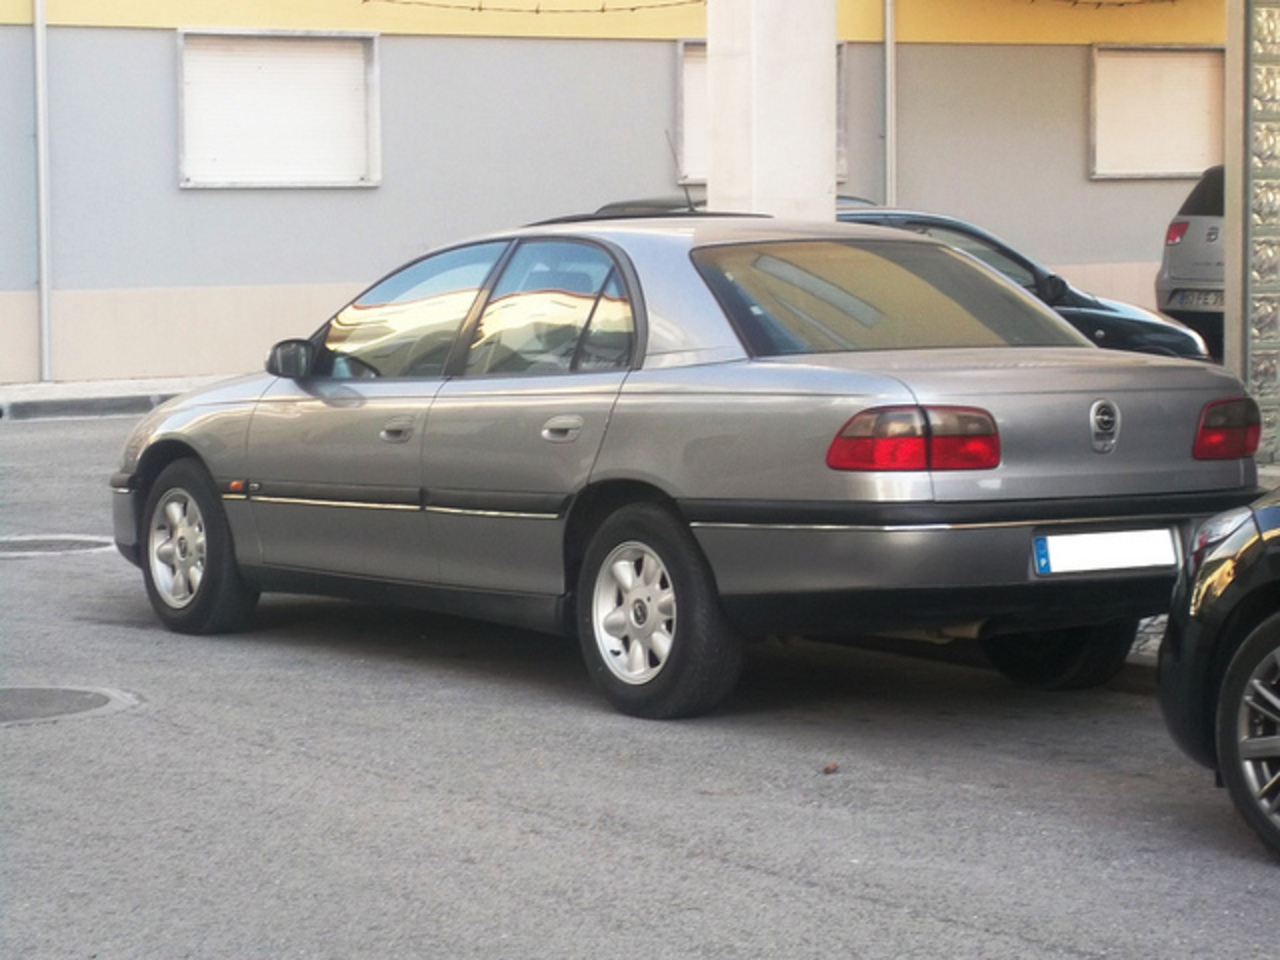 1995 Opel Omega | Flickr - Photo Sharing!